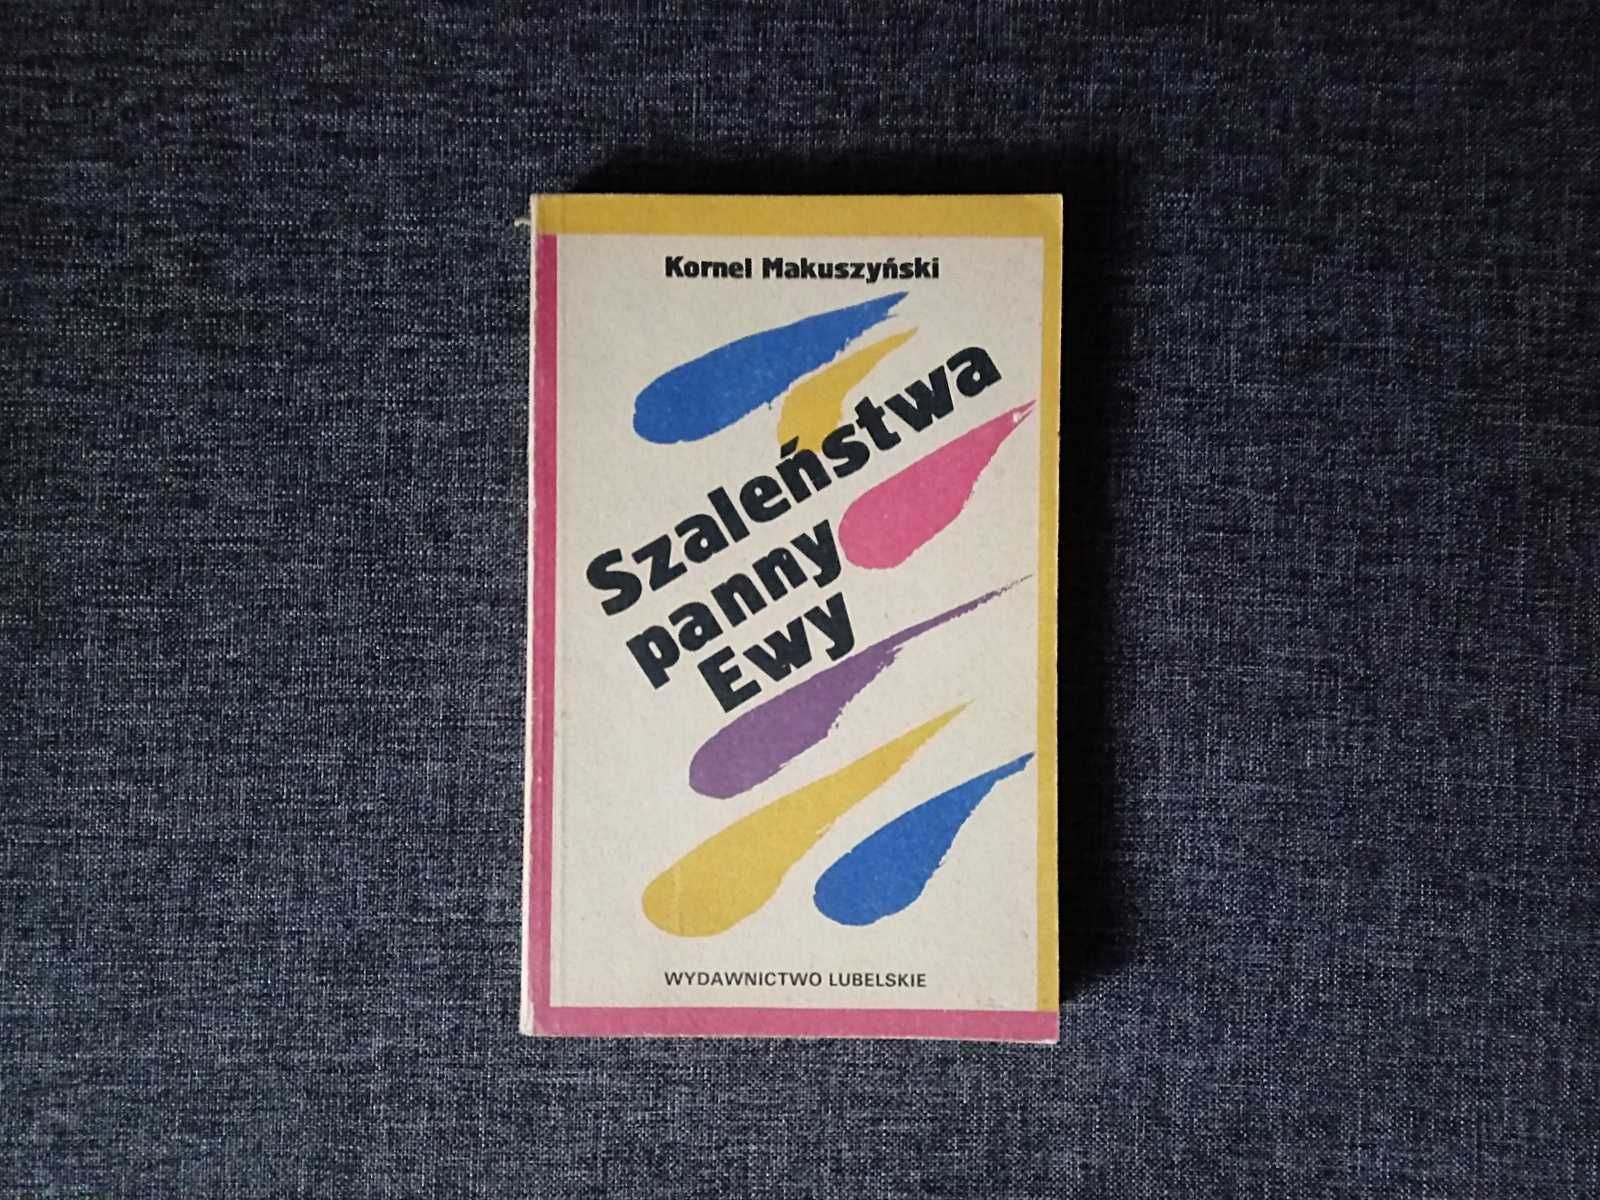 Kornel Makuszyński "Szaleństwa panny Ewy" Wydawnictwo Lubelskie 1988r